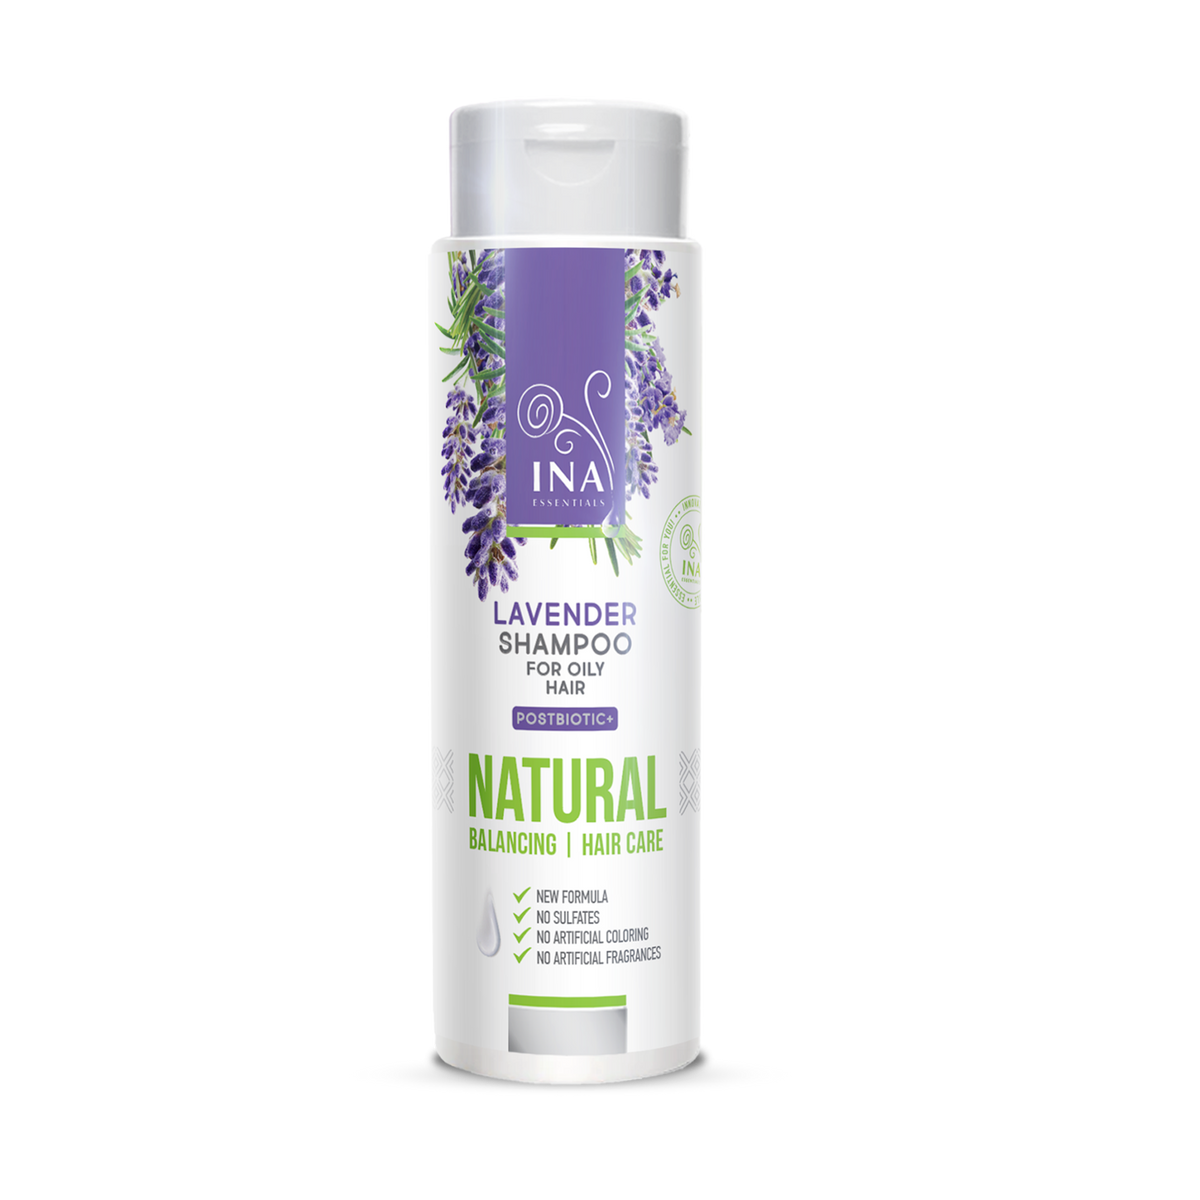 Prirodni šampon od lavande protiv peruti za masnu kosu (200 ml) - organskim uljem lavande